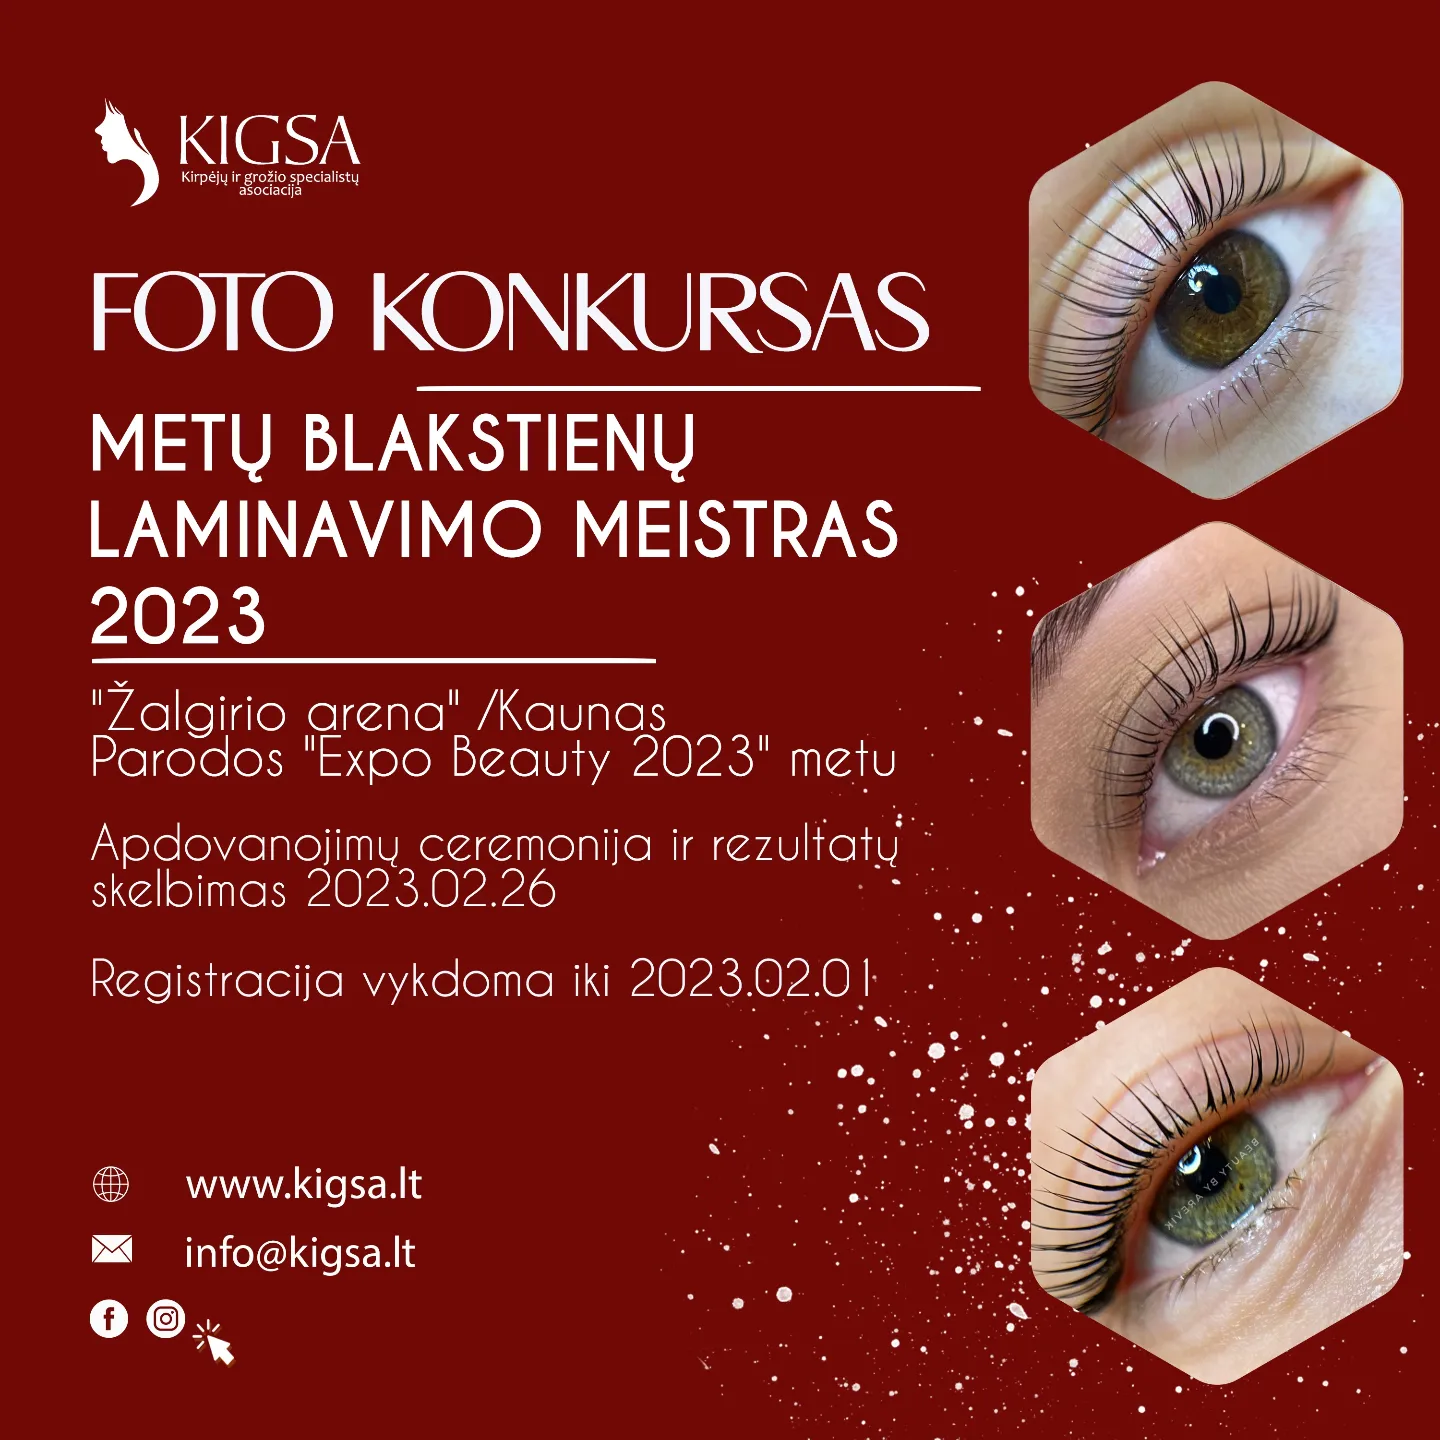 FOTO KONKURSAS METŲ BLAKSTIENŲ LAMINAVIMO MEISTRAS 2023 – REGISTRACIJA